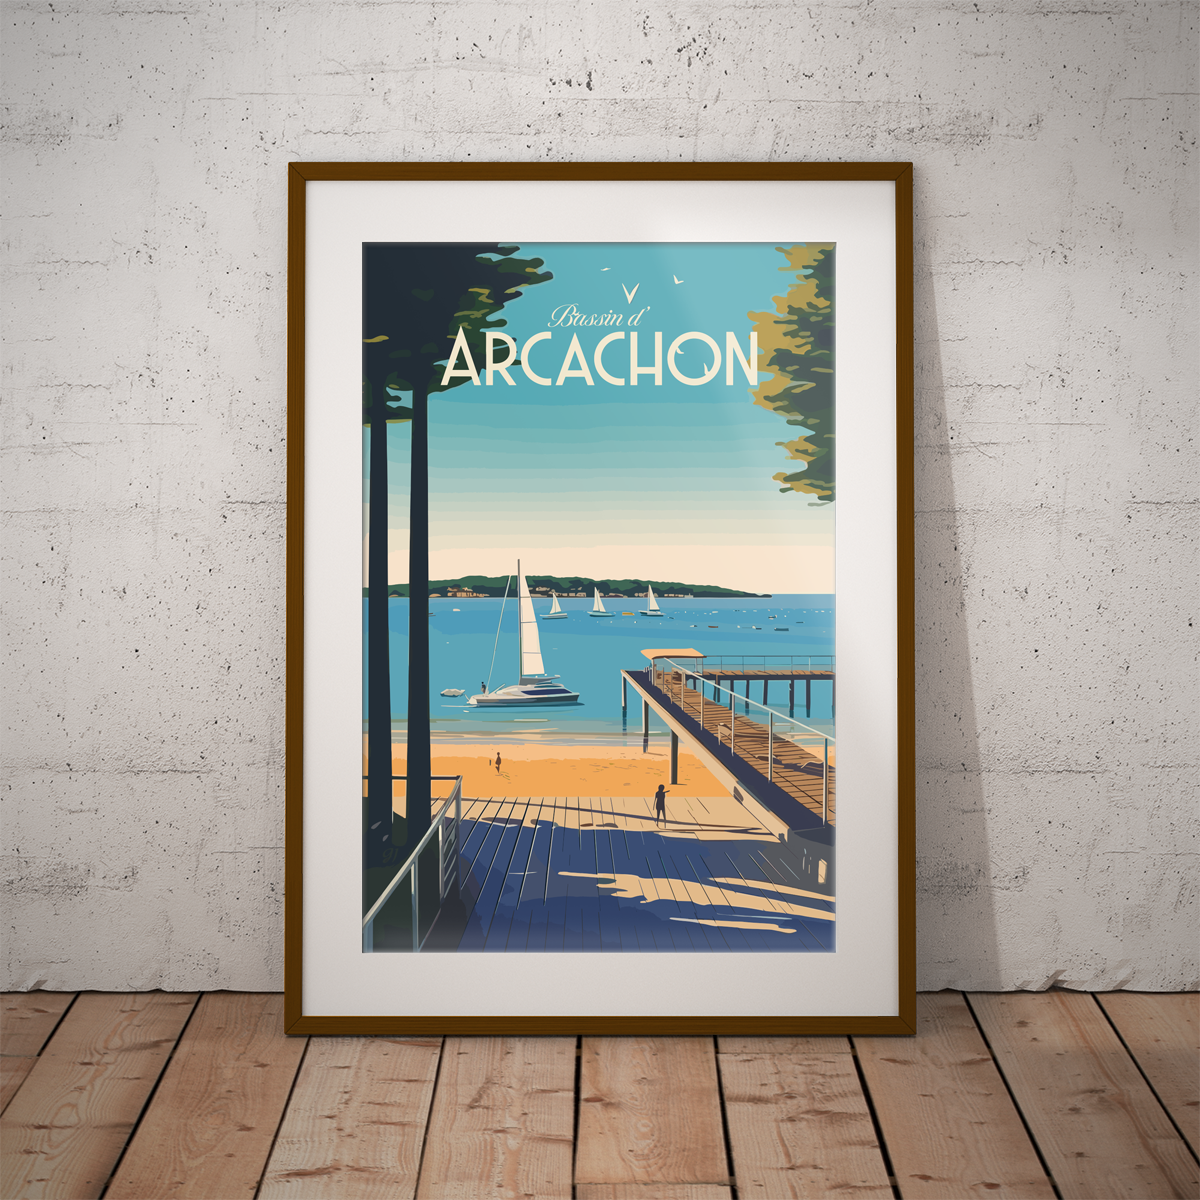 Arcachon - Plage poster by bon voyage design